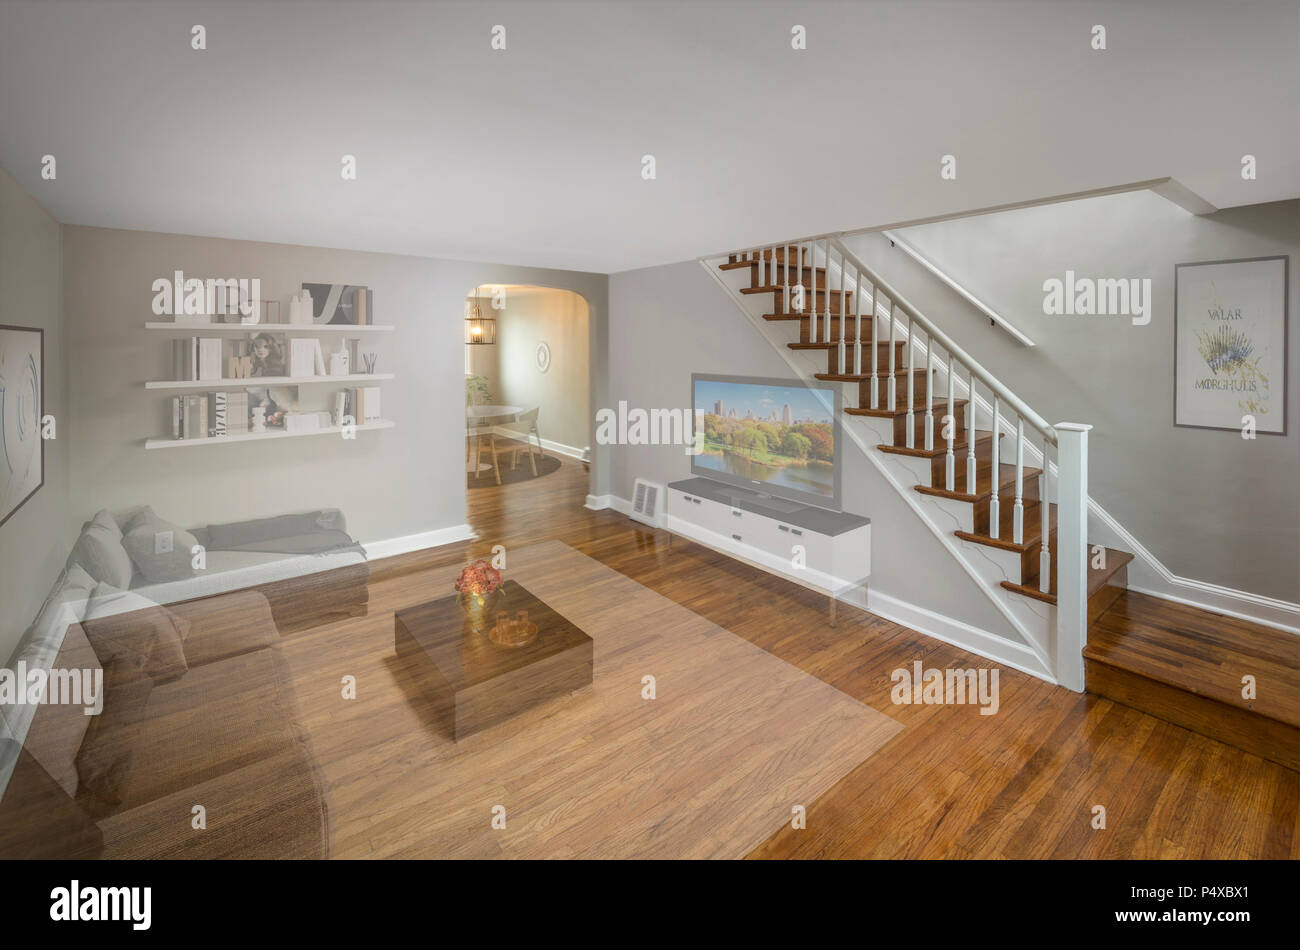 Virtuelle Inszenierung für Immobilien Verkauf verblasst zu zeigen Post Processing Wirkung Stockfoto